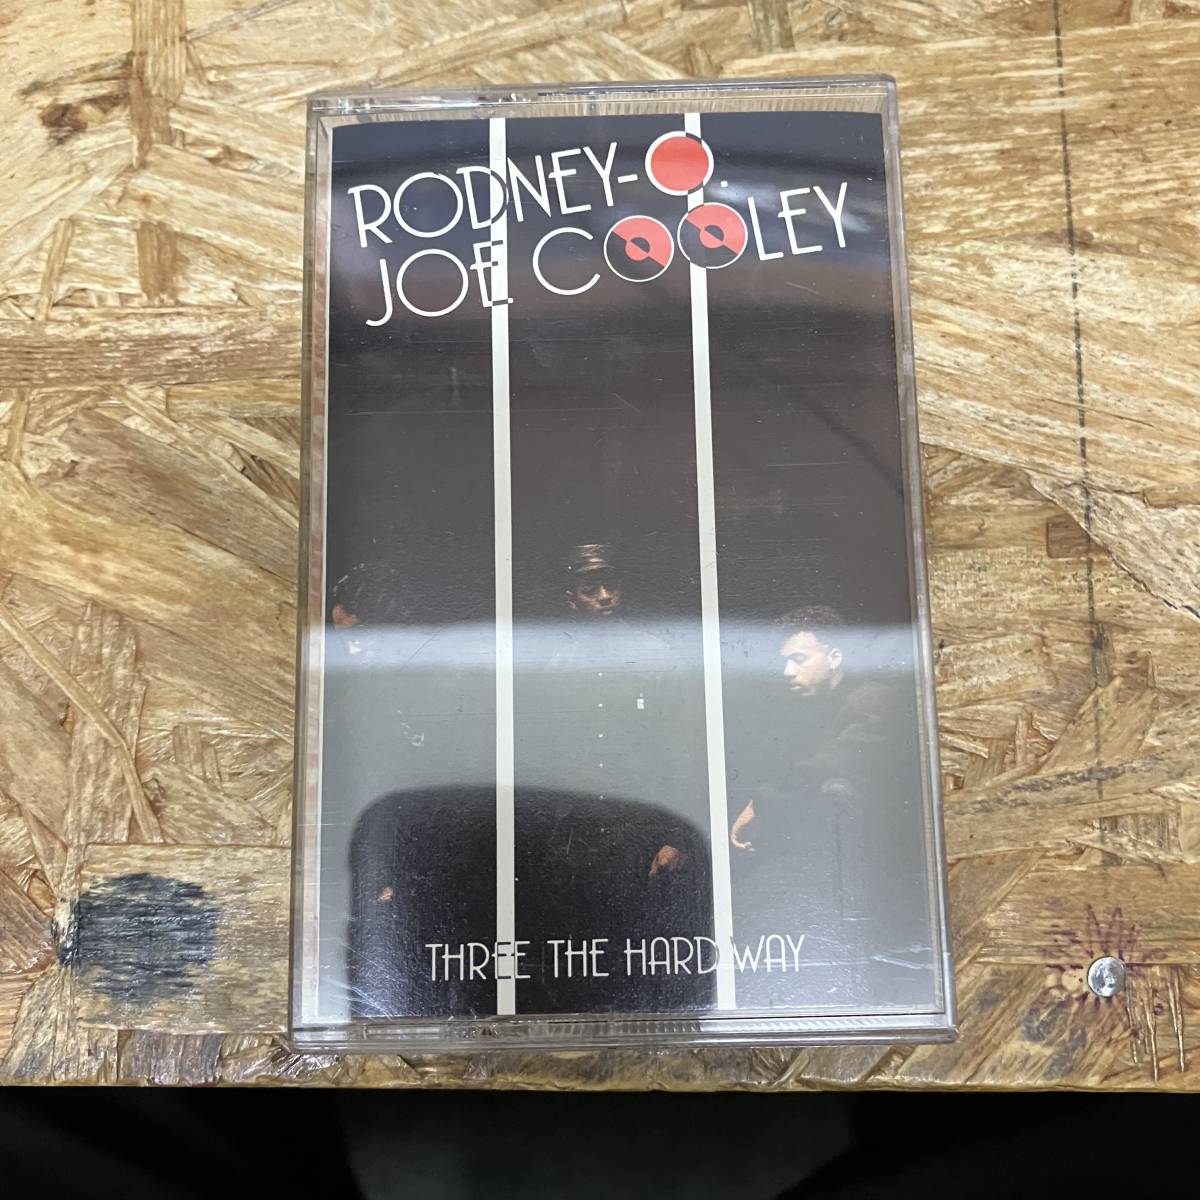 シHIPHOP,R&B RODNEY O. -JOE COOLEY - THREE THE HARD WAY アルバム,名作!! TAPE 中古品_画像1